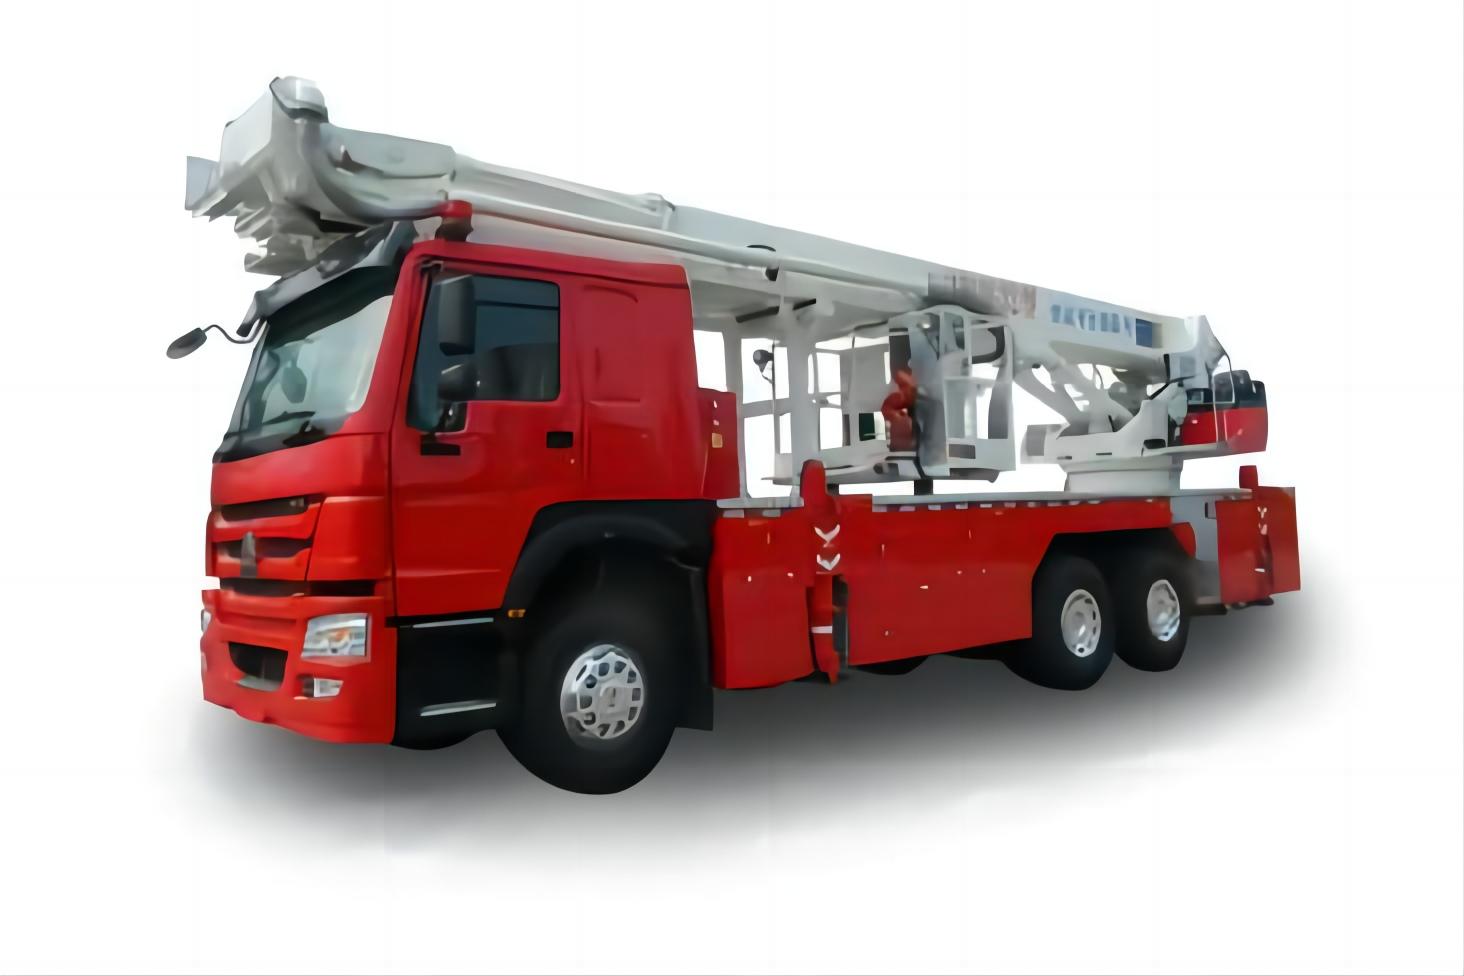 HOWO DG32 Aerial Hydraulic Platform Fire Truck